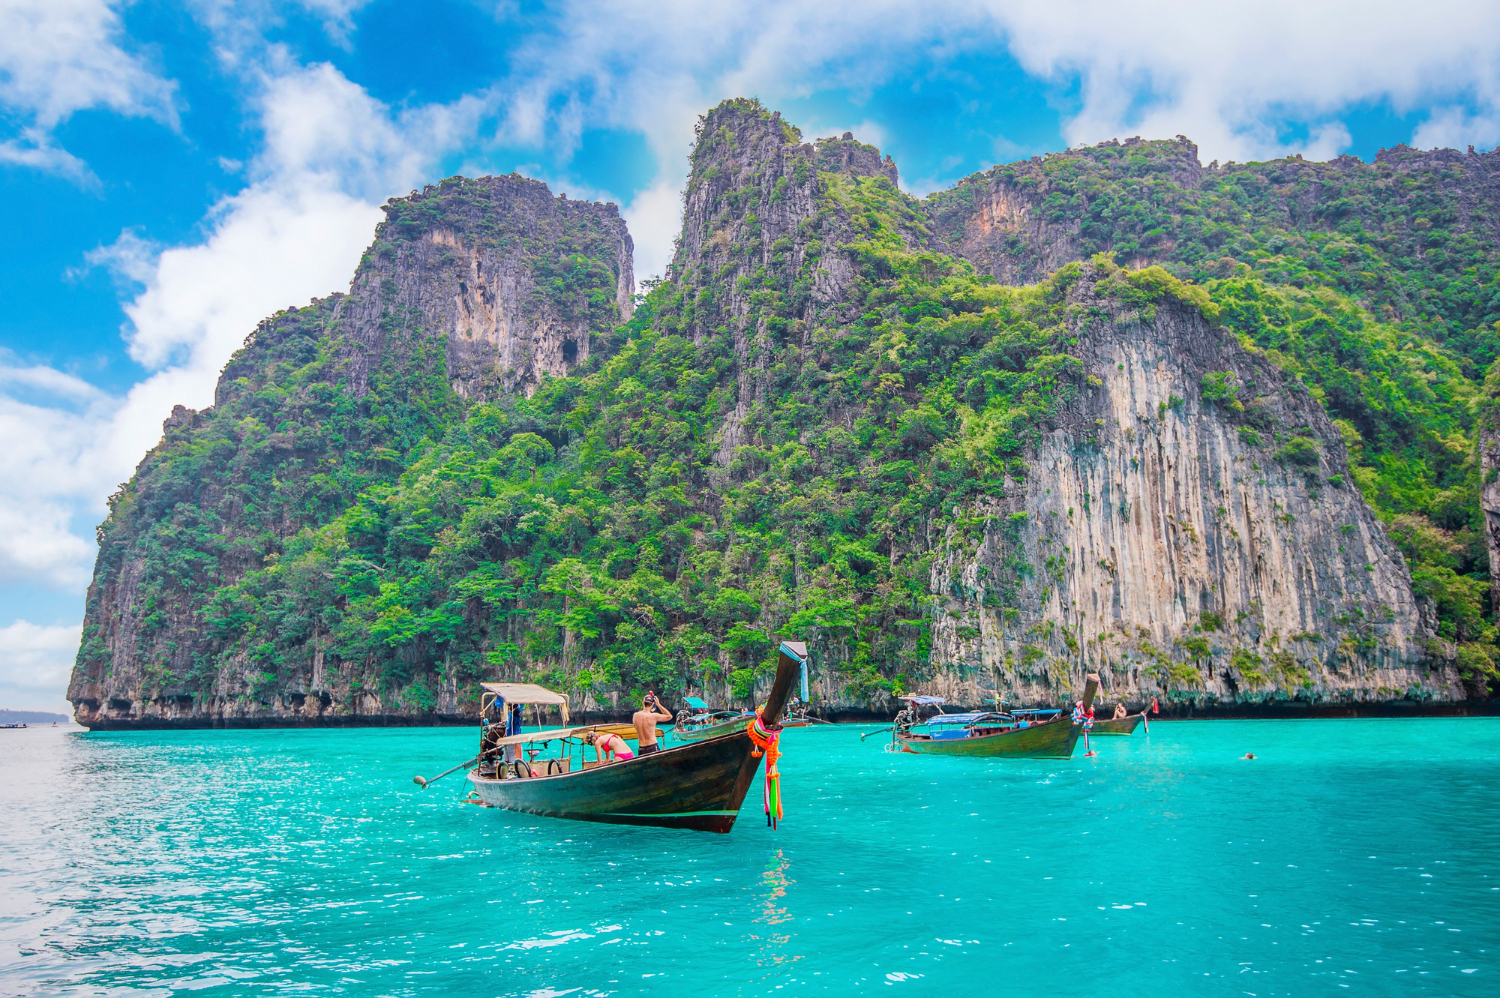 แนะนำทะเลในประเทศไทย ที่สวยงามไม่แพ้ต่างประเทศอย่างแน่นอน ! post thumbnail image